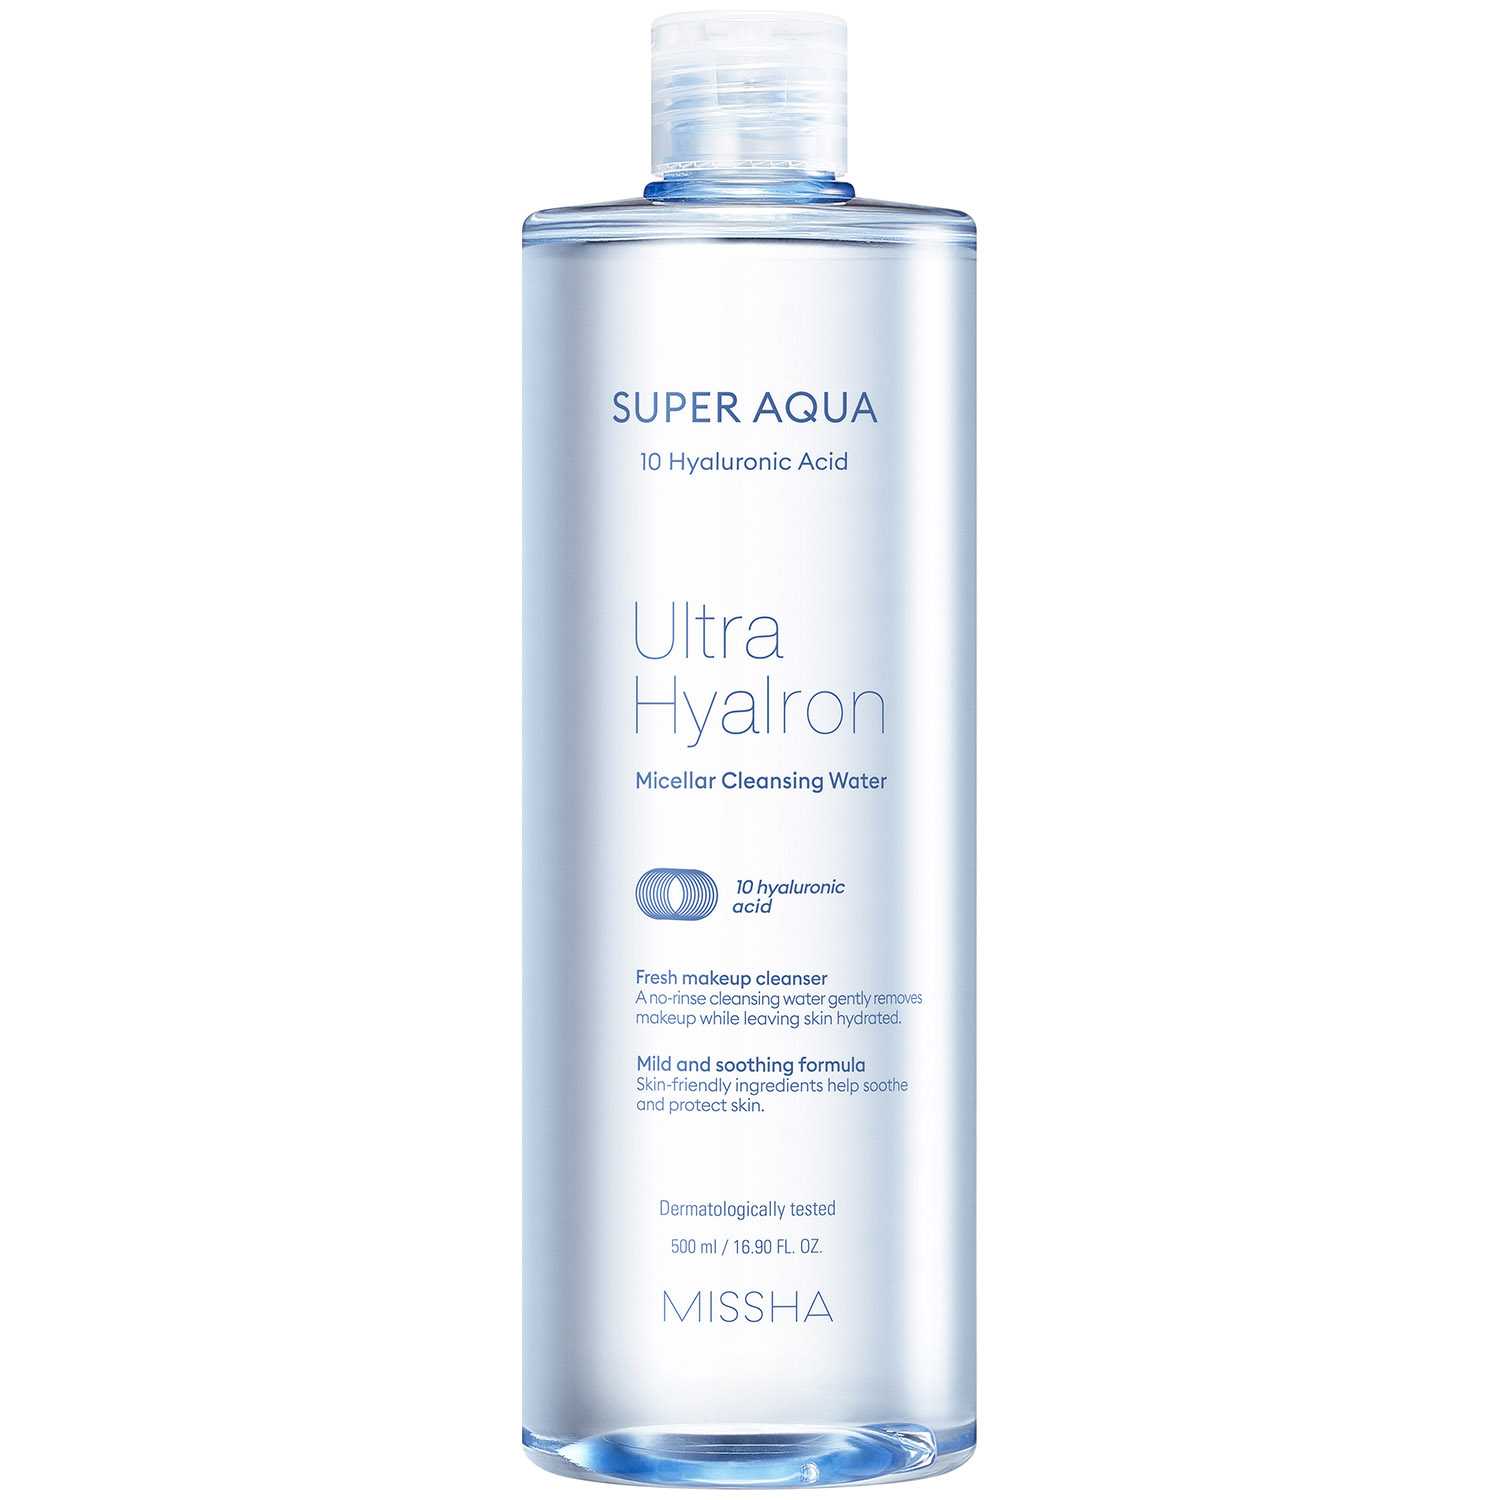 Missha Мицеллярная вода Ultra Hyalron, 500 мл (Missha, Super Aqua) вода мицеллярная для всех типов кожи включая чувствительную кора 300мл